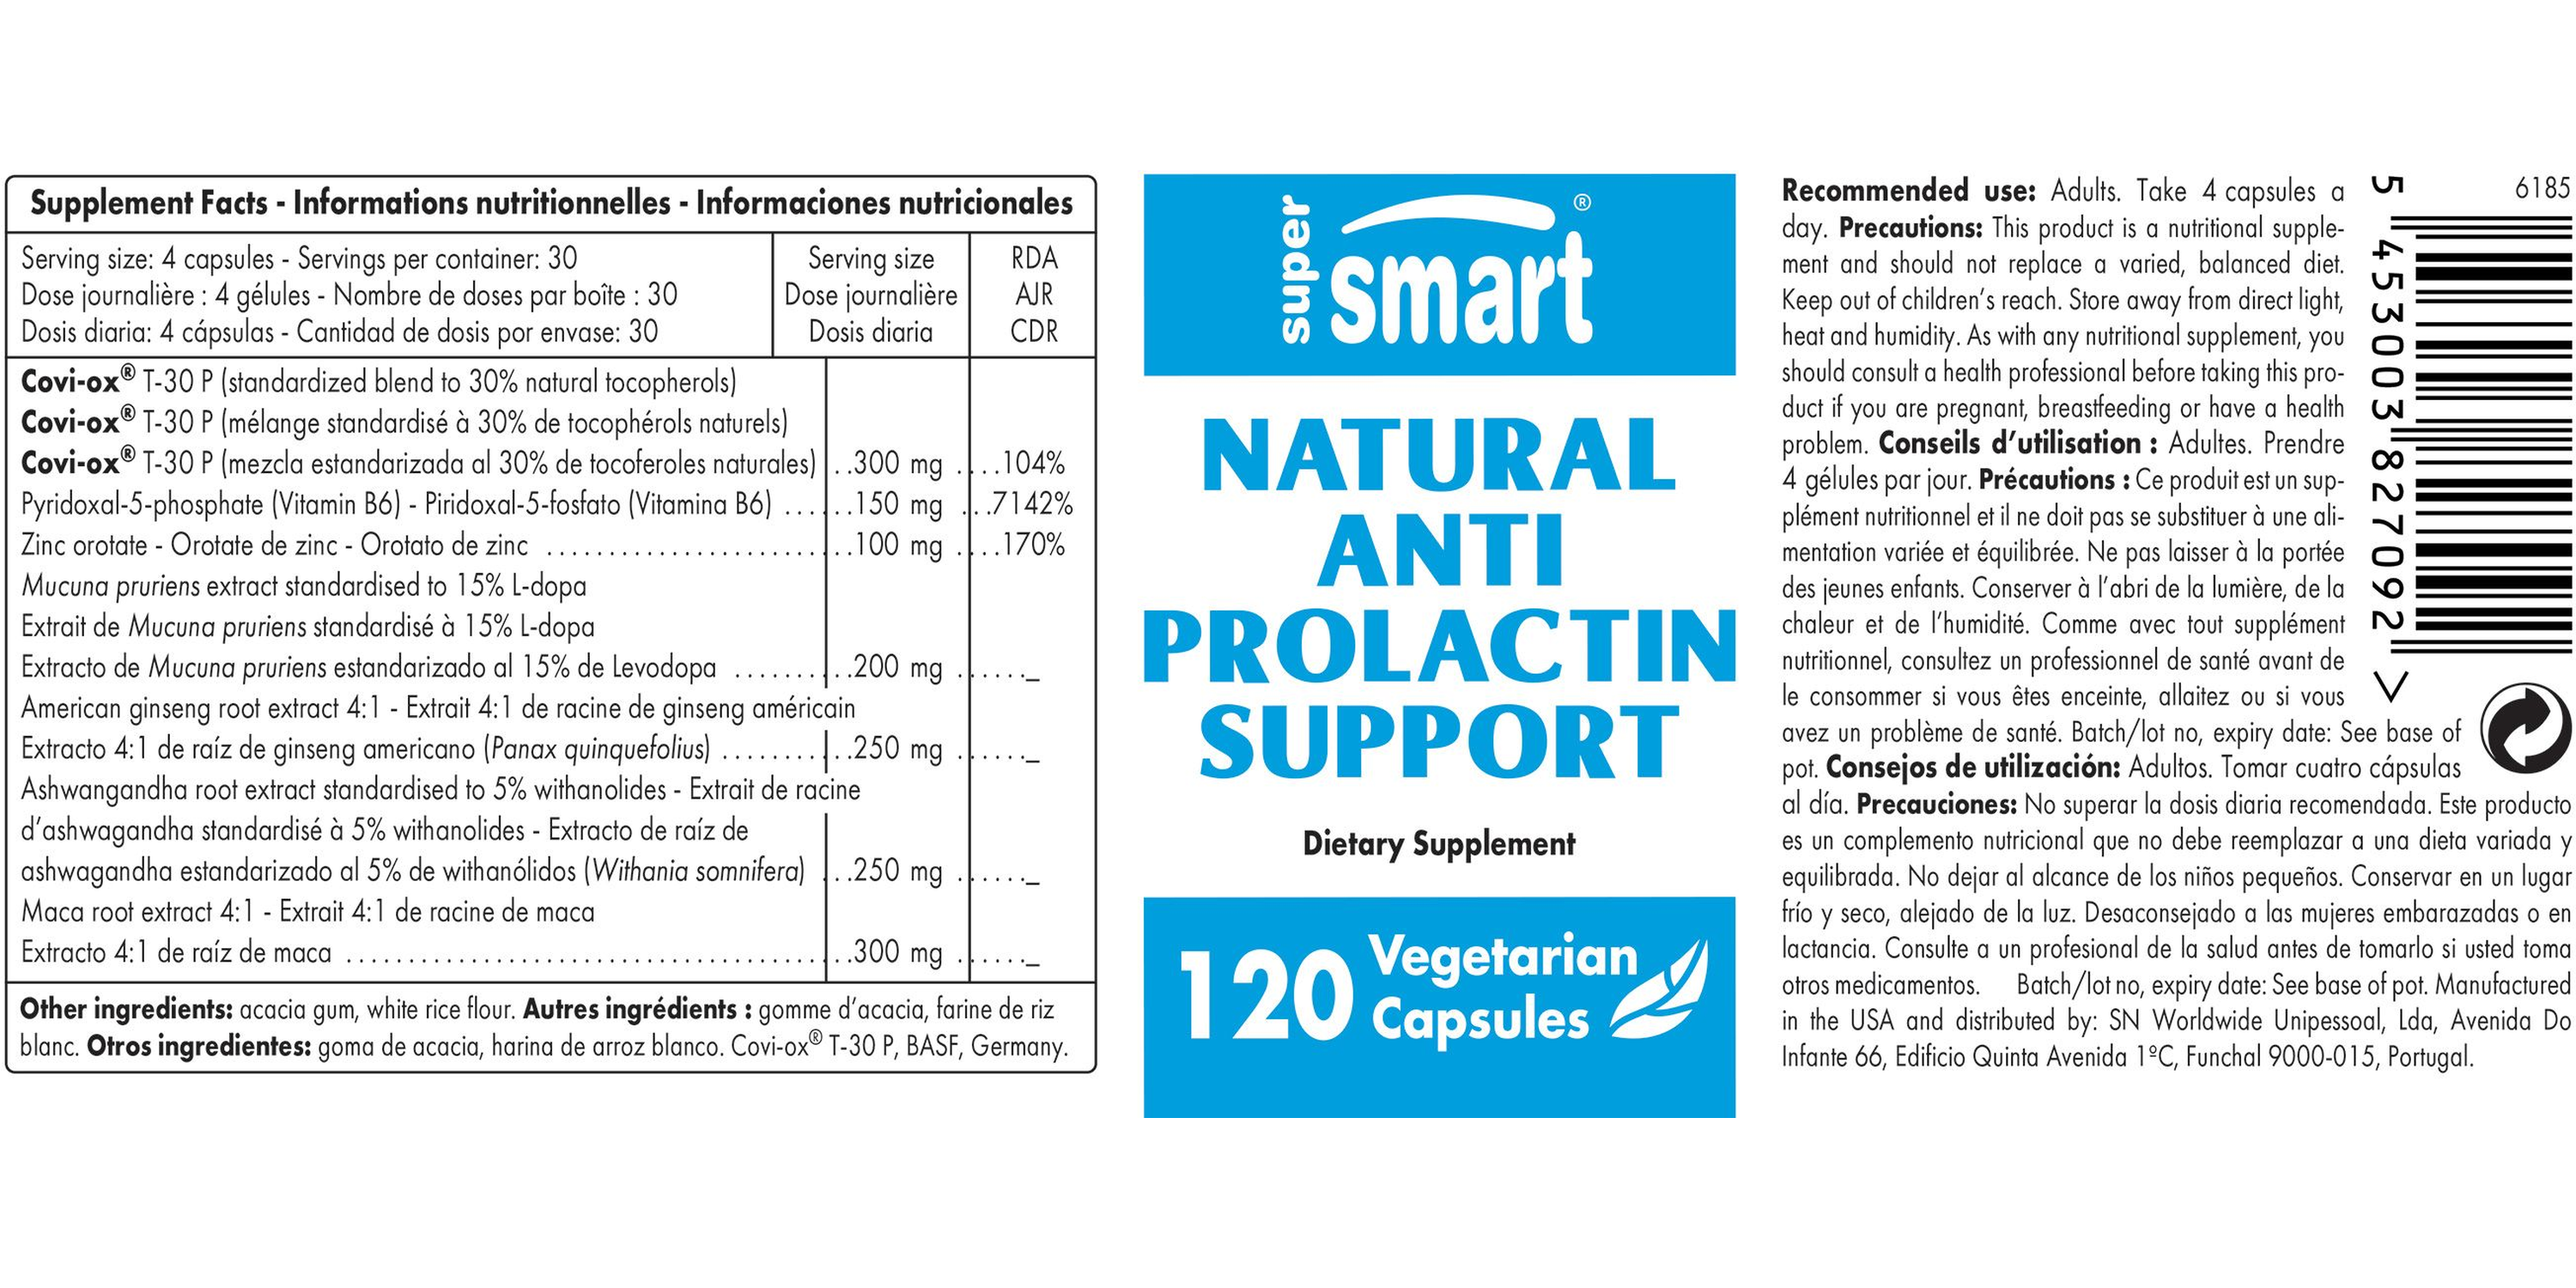 Natural Anti Prolactin Support